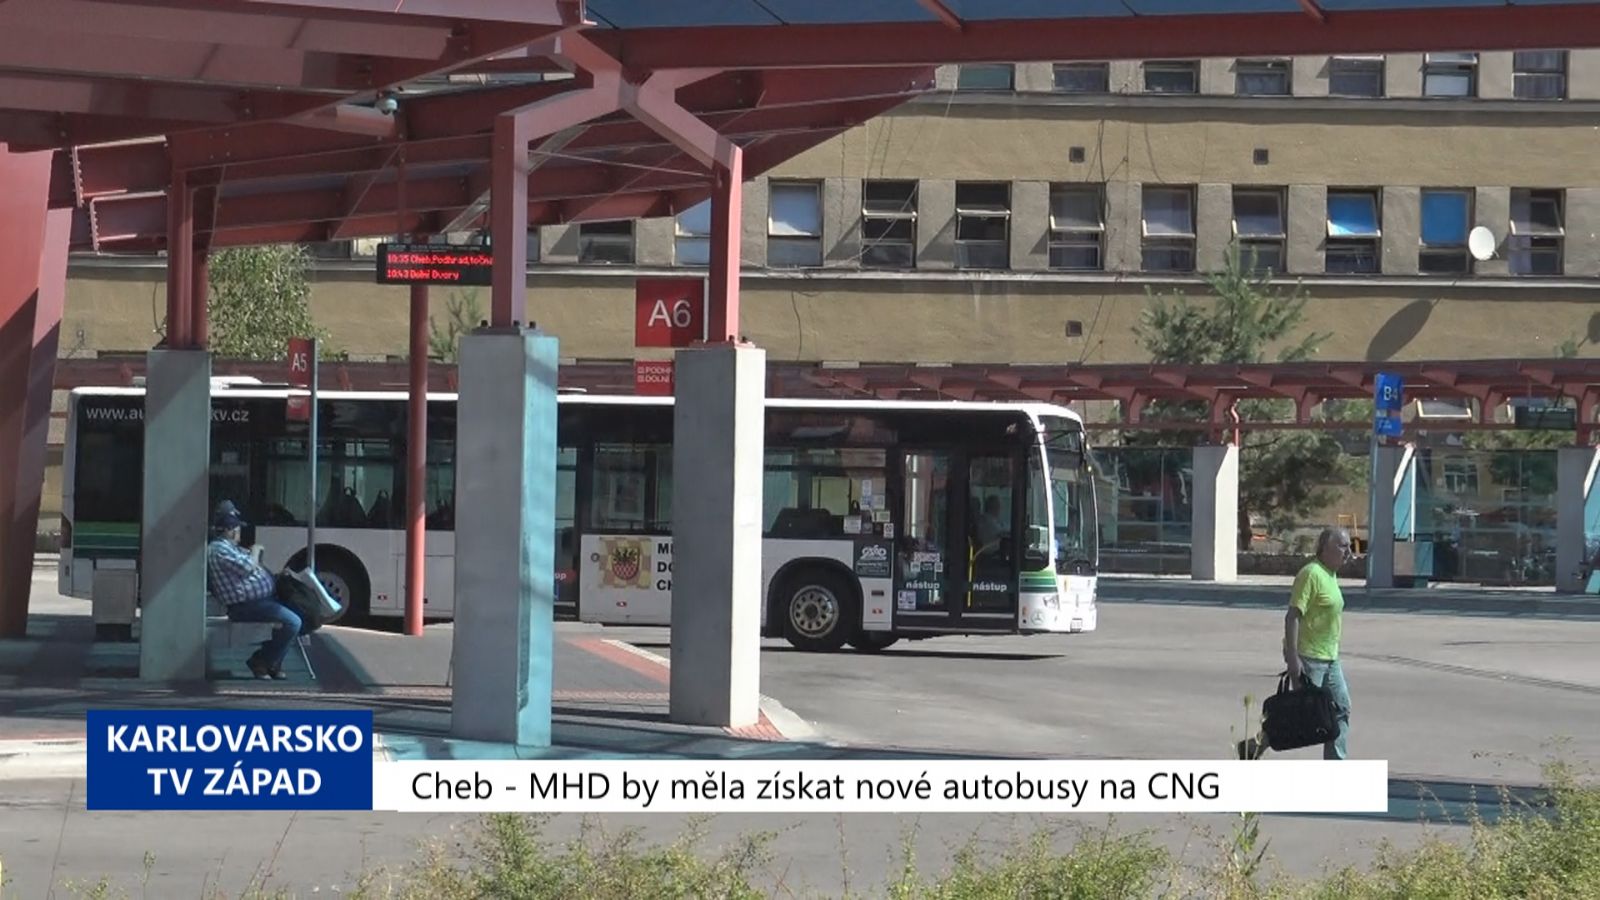 Cheb: MHD by měla získat nové autobusy na CNG (TV Západ)